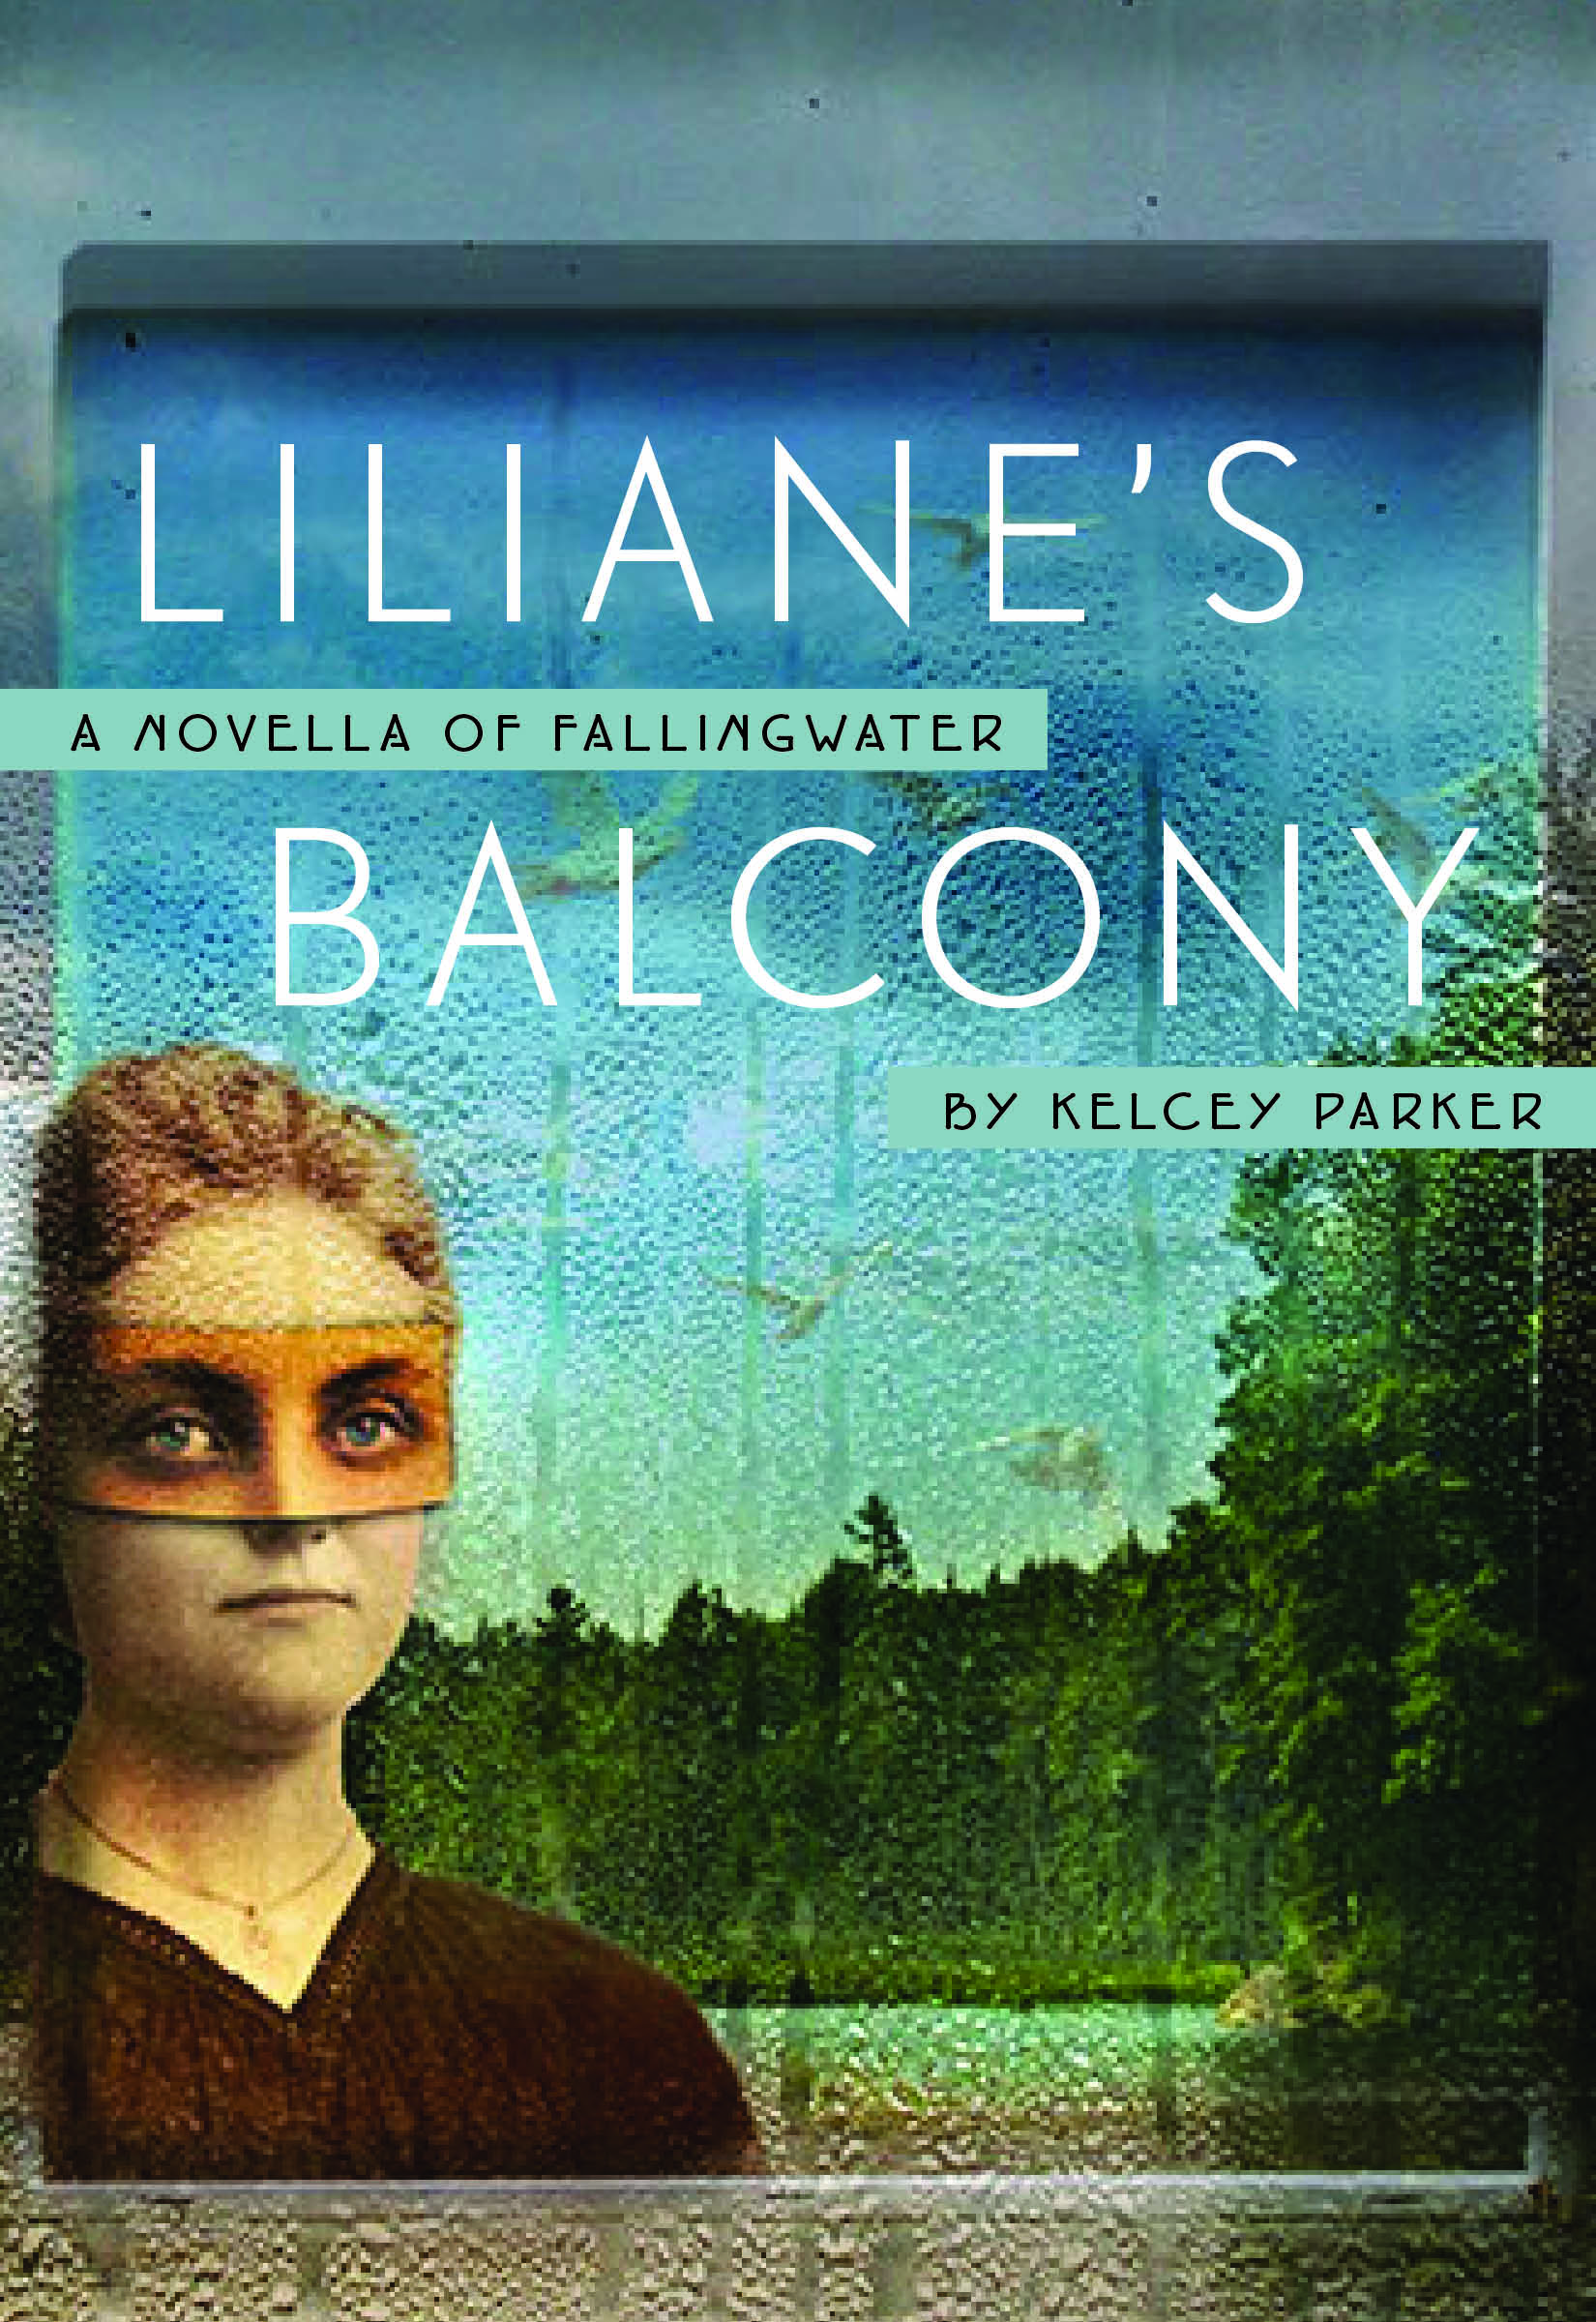 "Liliane's Balcony" (book cover)